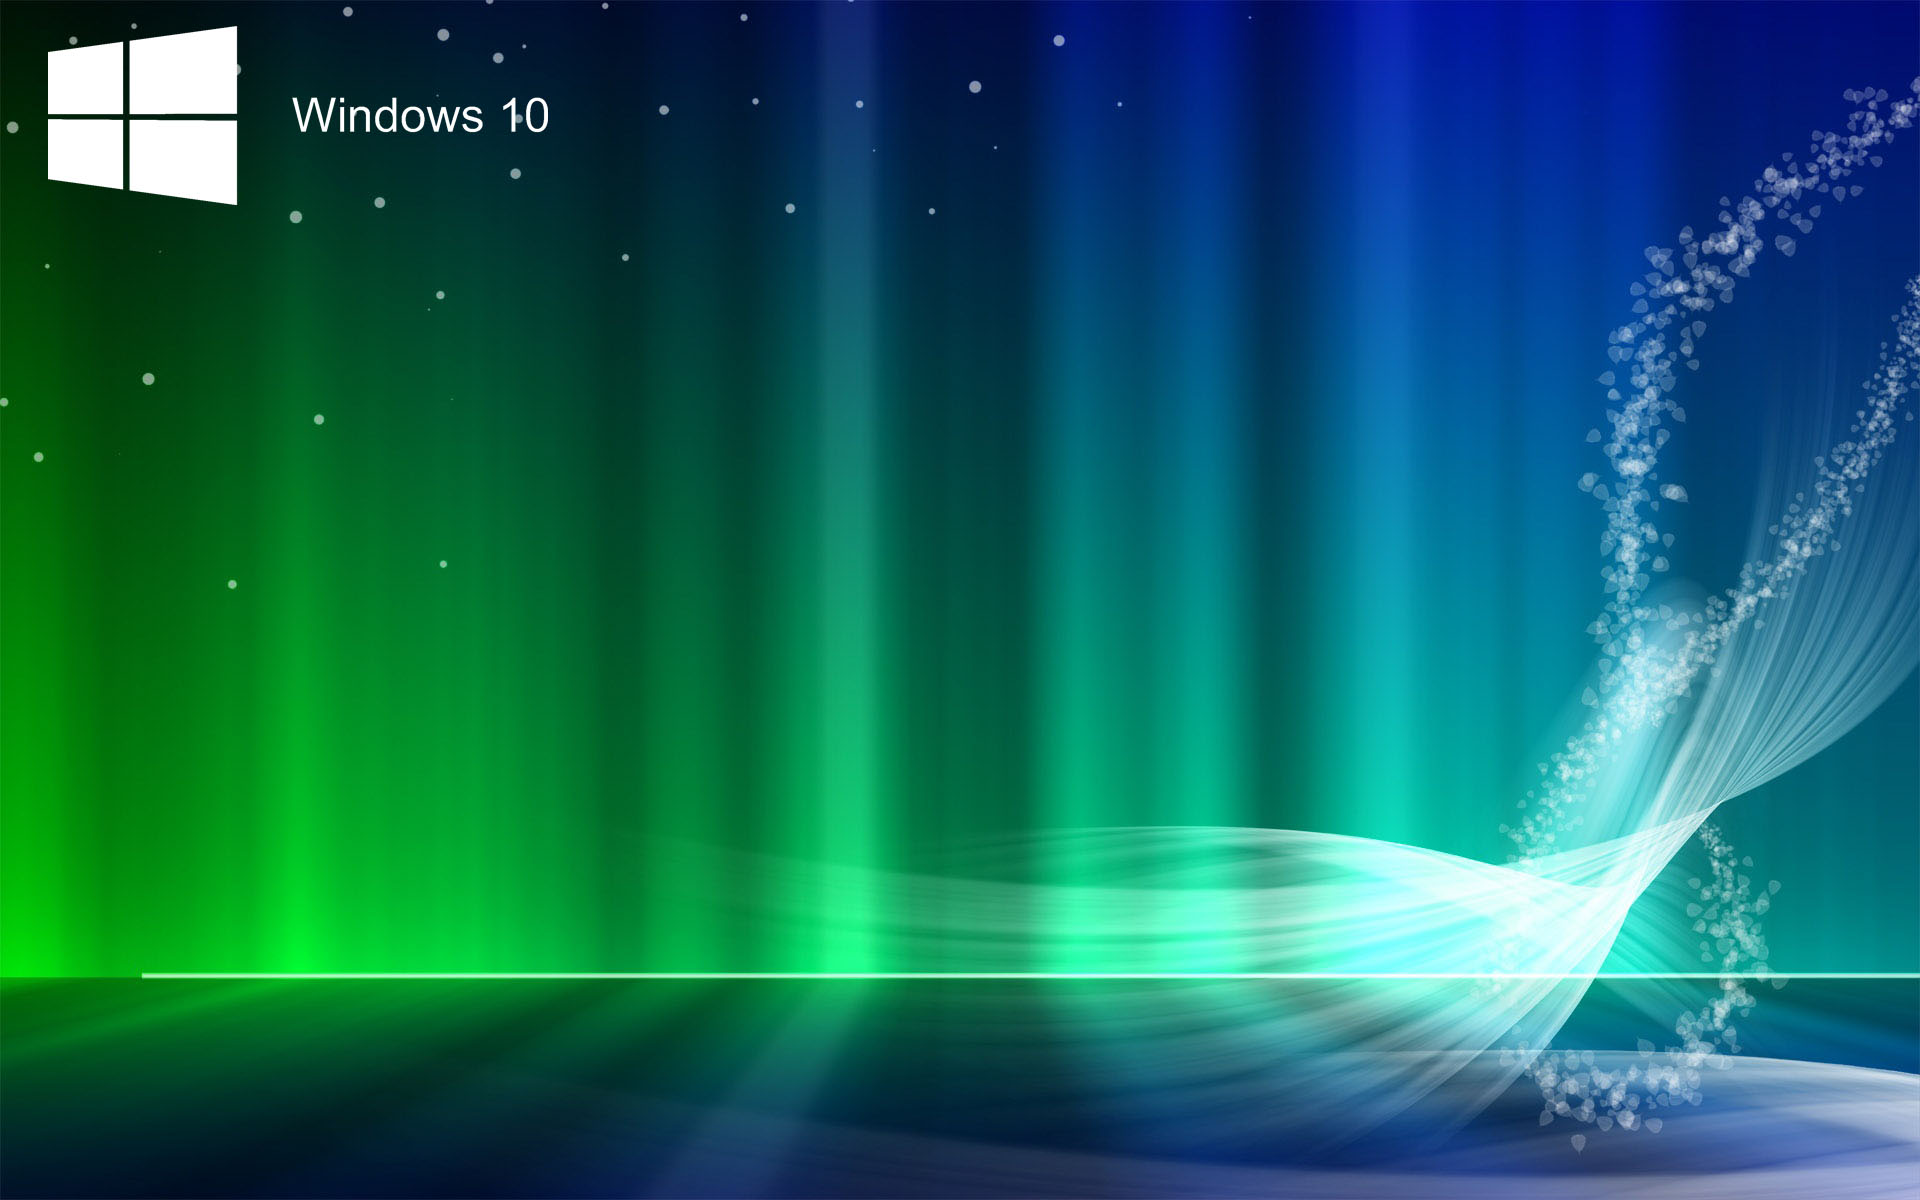 Tải hình nền Windows 10 cho laptop - Đừng bỏ lỡ cơ hội để tải về những hình nền Windows 10 đẹp mắt cho laptop của bạn. Những hình nền HD sẽ mang đến cho bạn sự sống động và hiệu ứng tuyệt vời. Tải về ngay để trang trí cho màn hình laptop của bạn trở nên độc đáo và thu hút hơn.